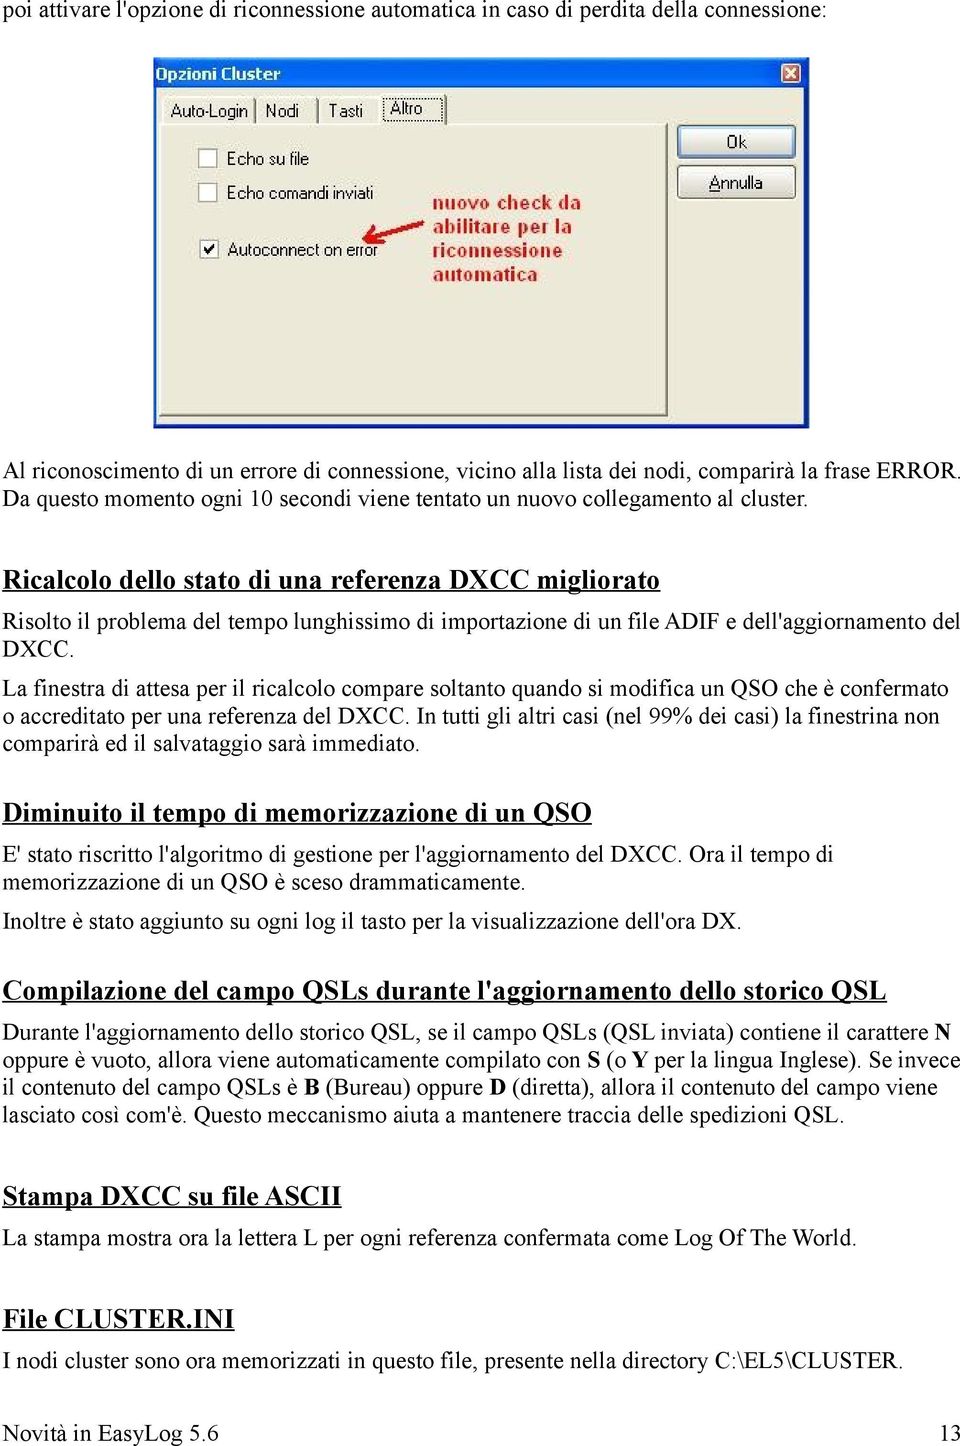 Ricalcolo dello stato di una referenza DXCC migliorato Risolto il problema del tempo lunghissimo di importazione di un file ADIF e dell'aggiornamento del DXCC.